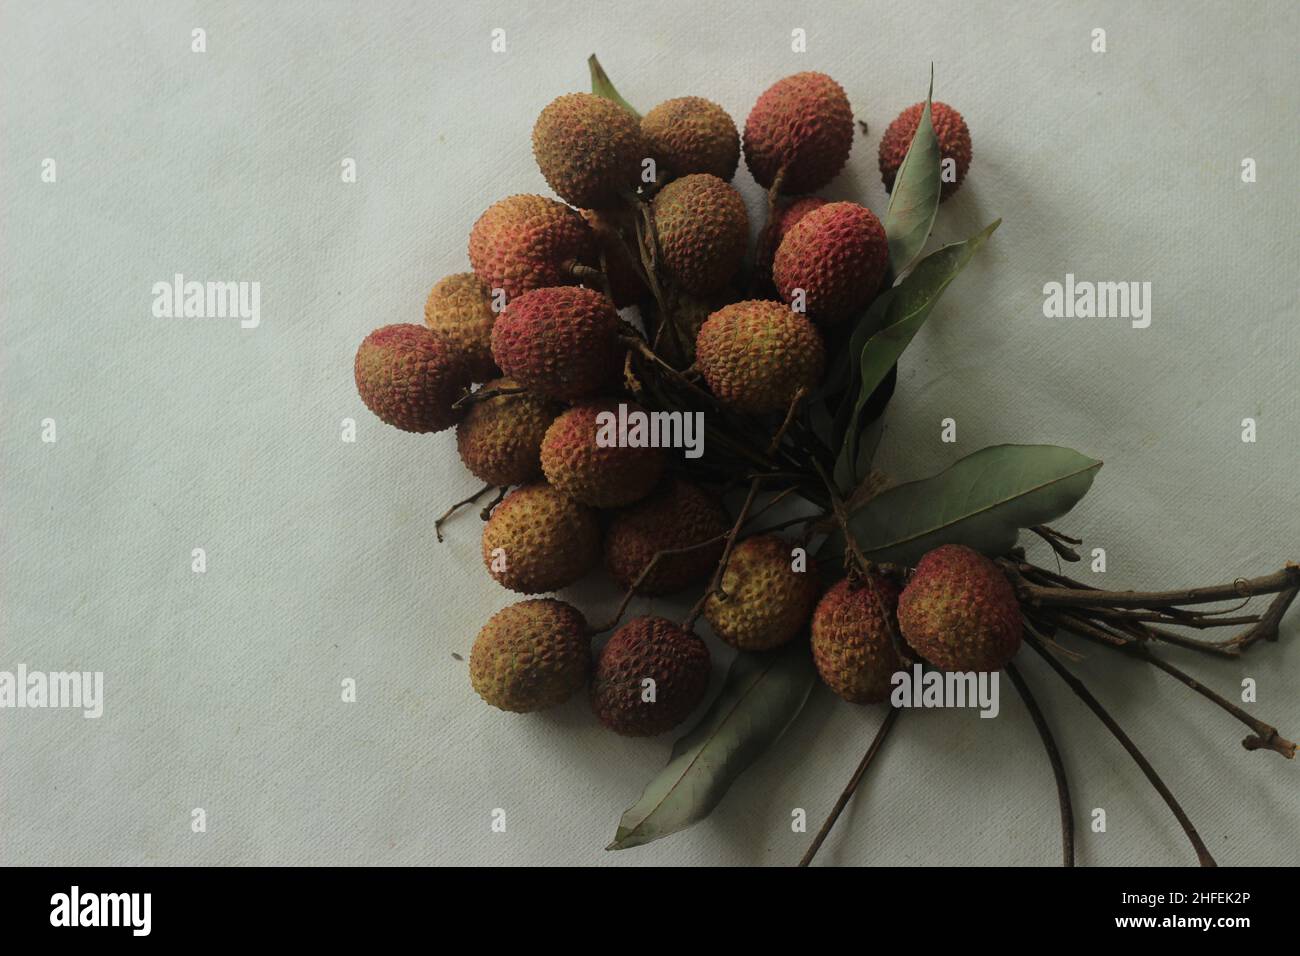 Litschi-Früchte auf weißem Hintergrund aufgenommen. Litchi chinensis auch buchstabiert litchi oder lichi, ist ein immergrüner Baum der Familie der Speckbeere oder Sapindaceae, gr Stockfoto